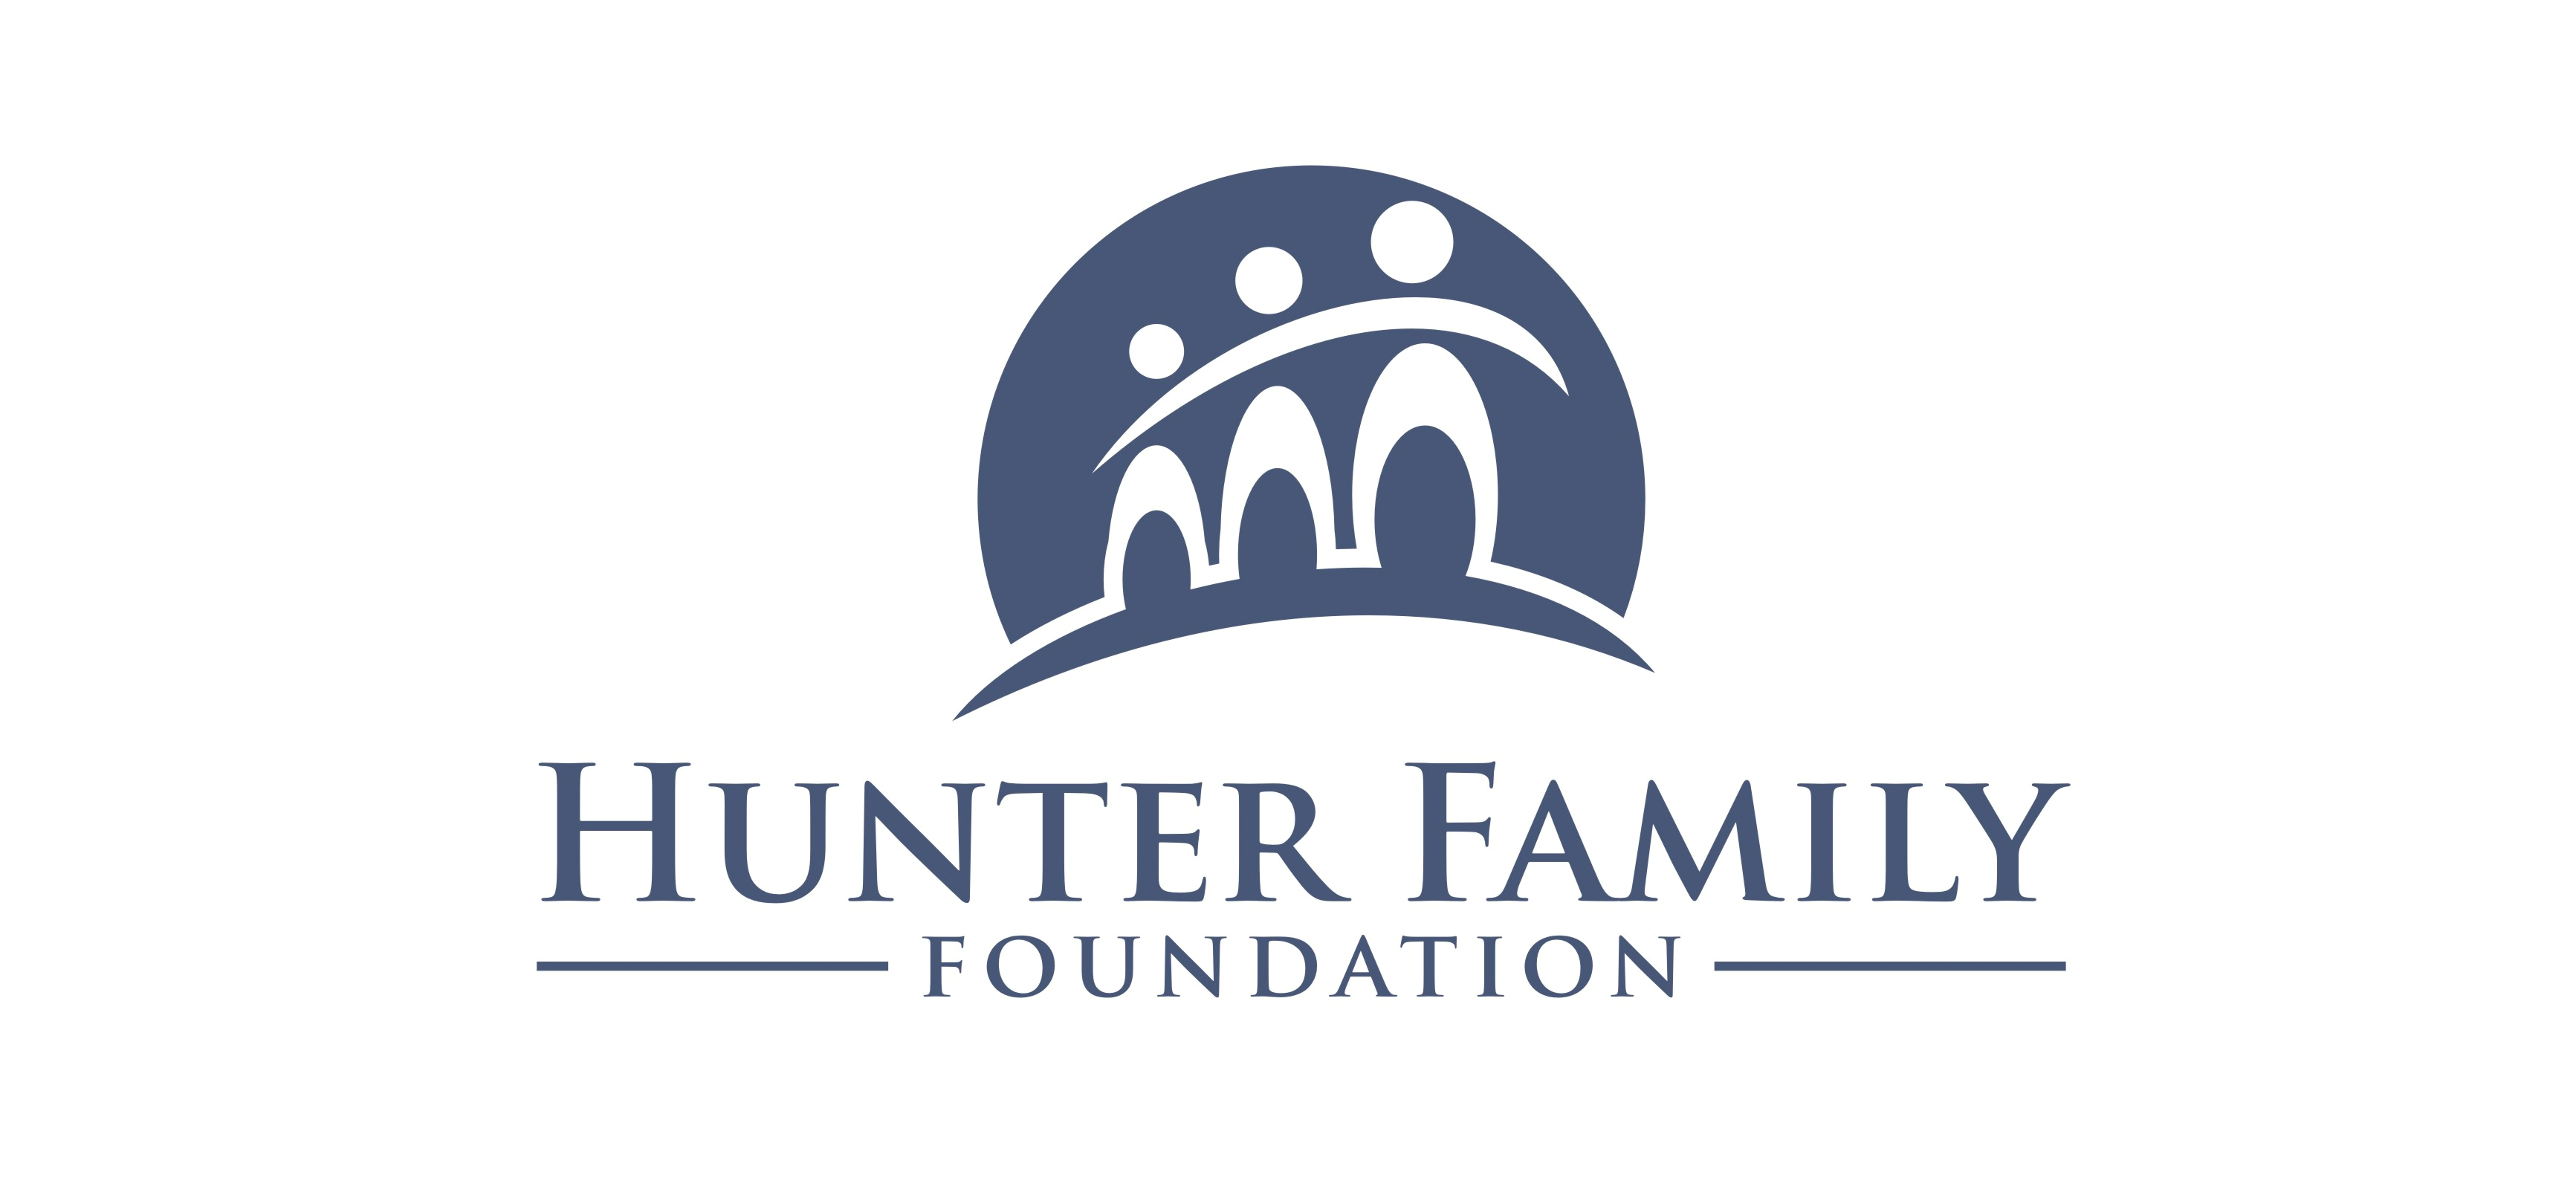 Hunter Family sponsorship logo